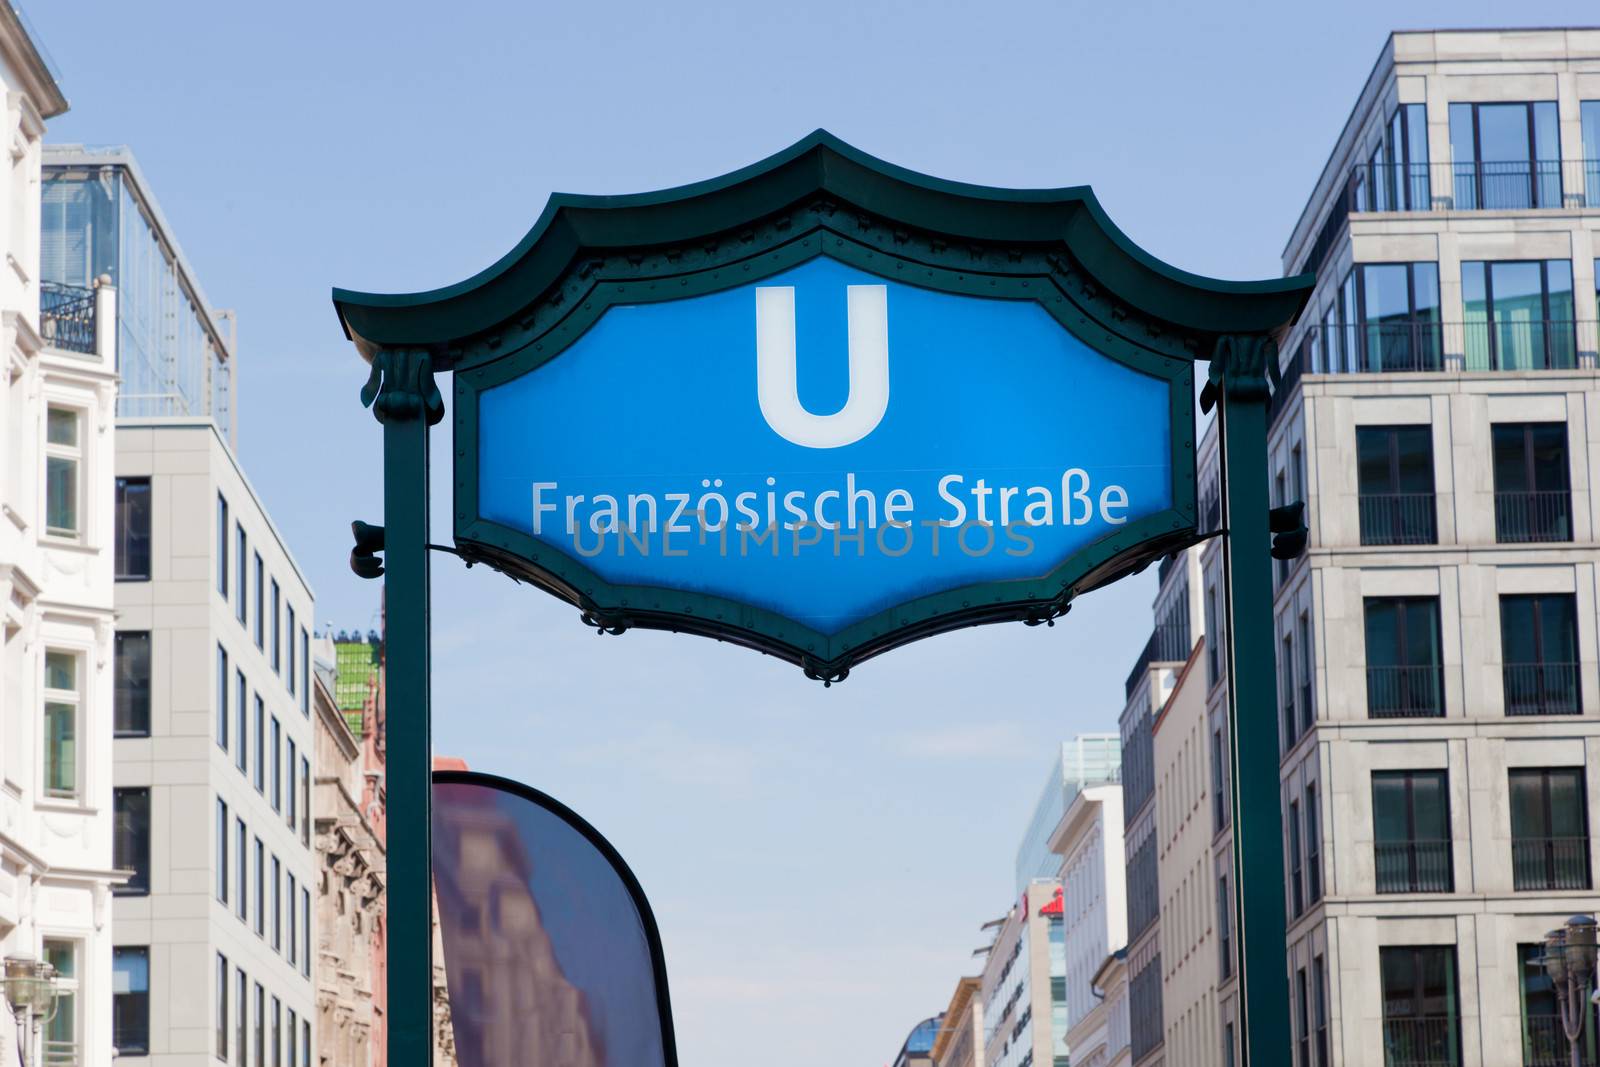 U-bahn franzosische strasse entrance. Berlin Mitte, Germany